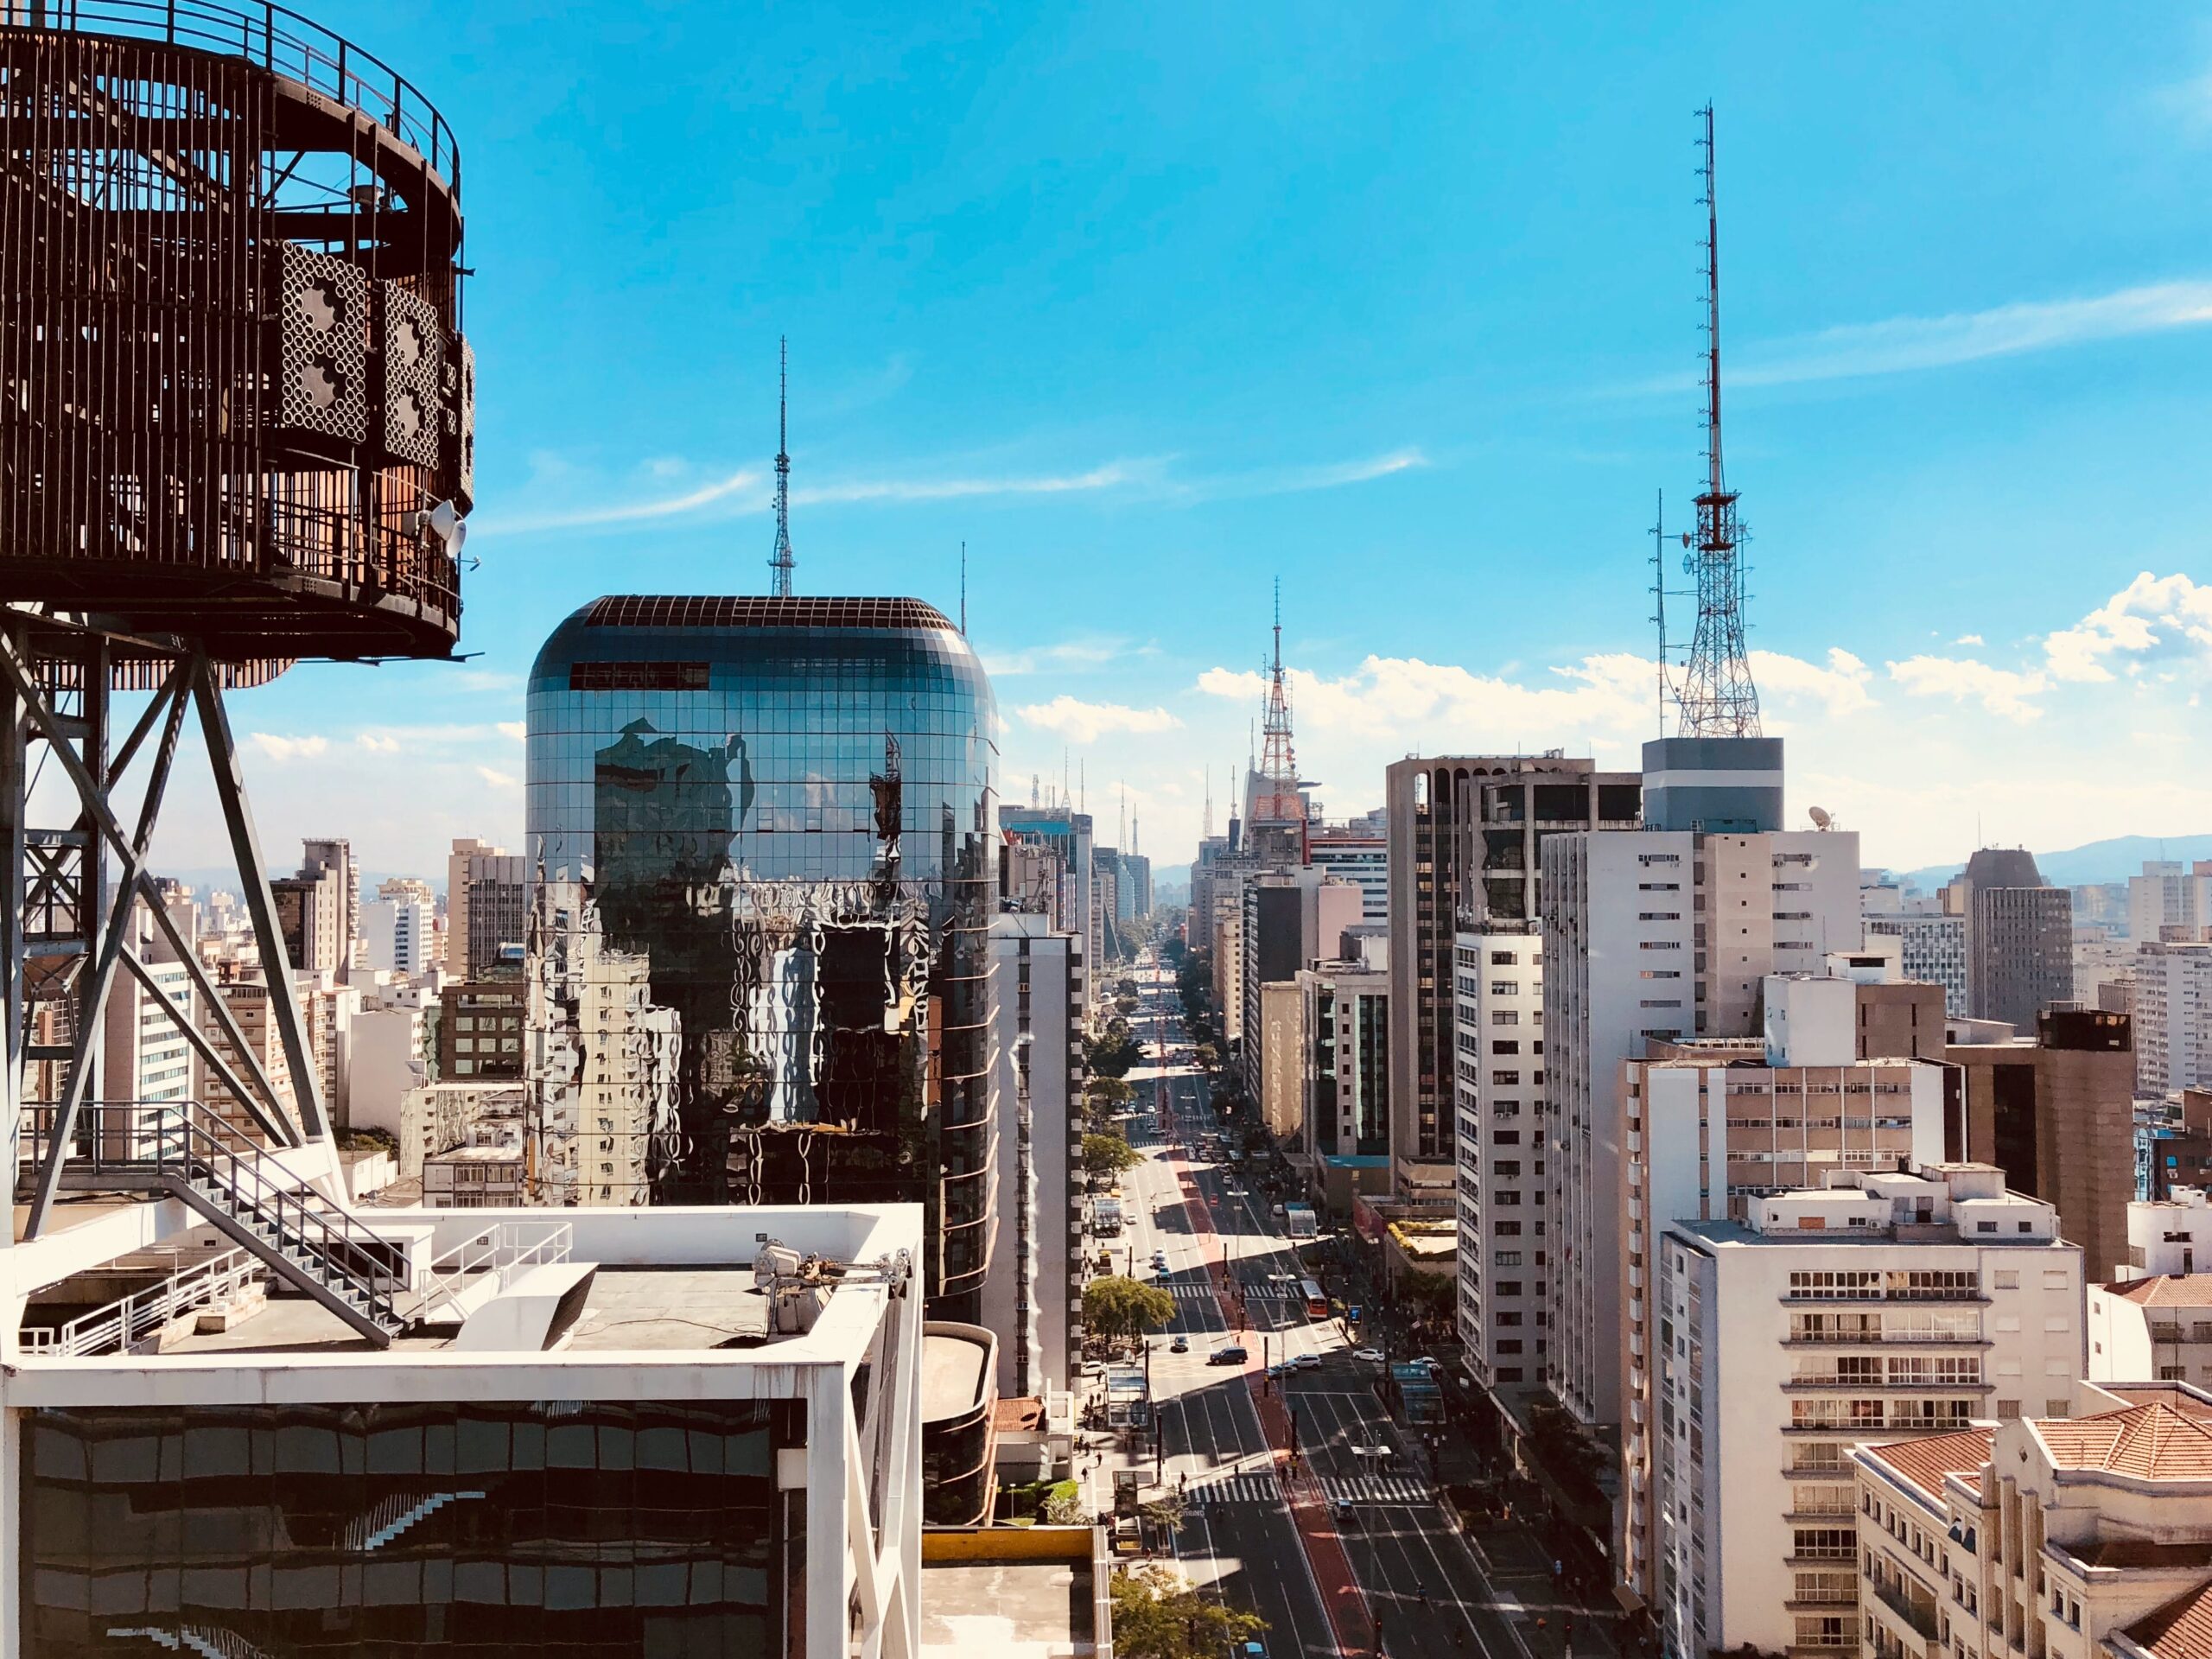 State of São Paulo, Brazil